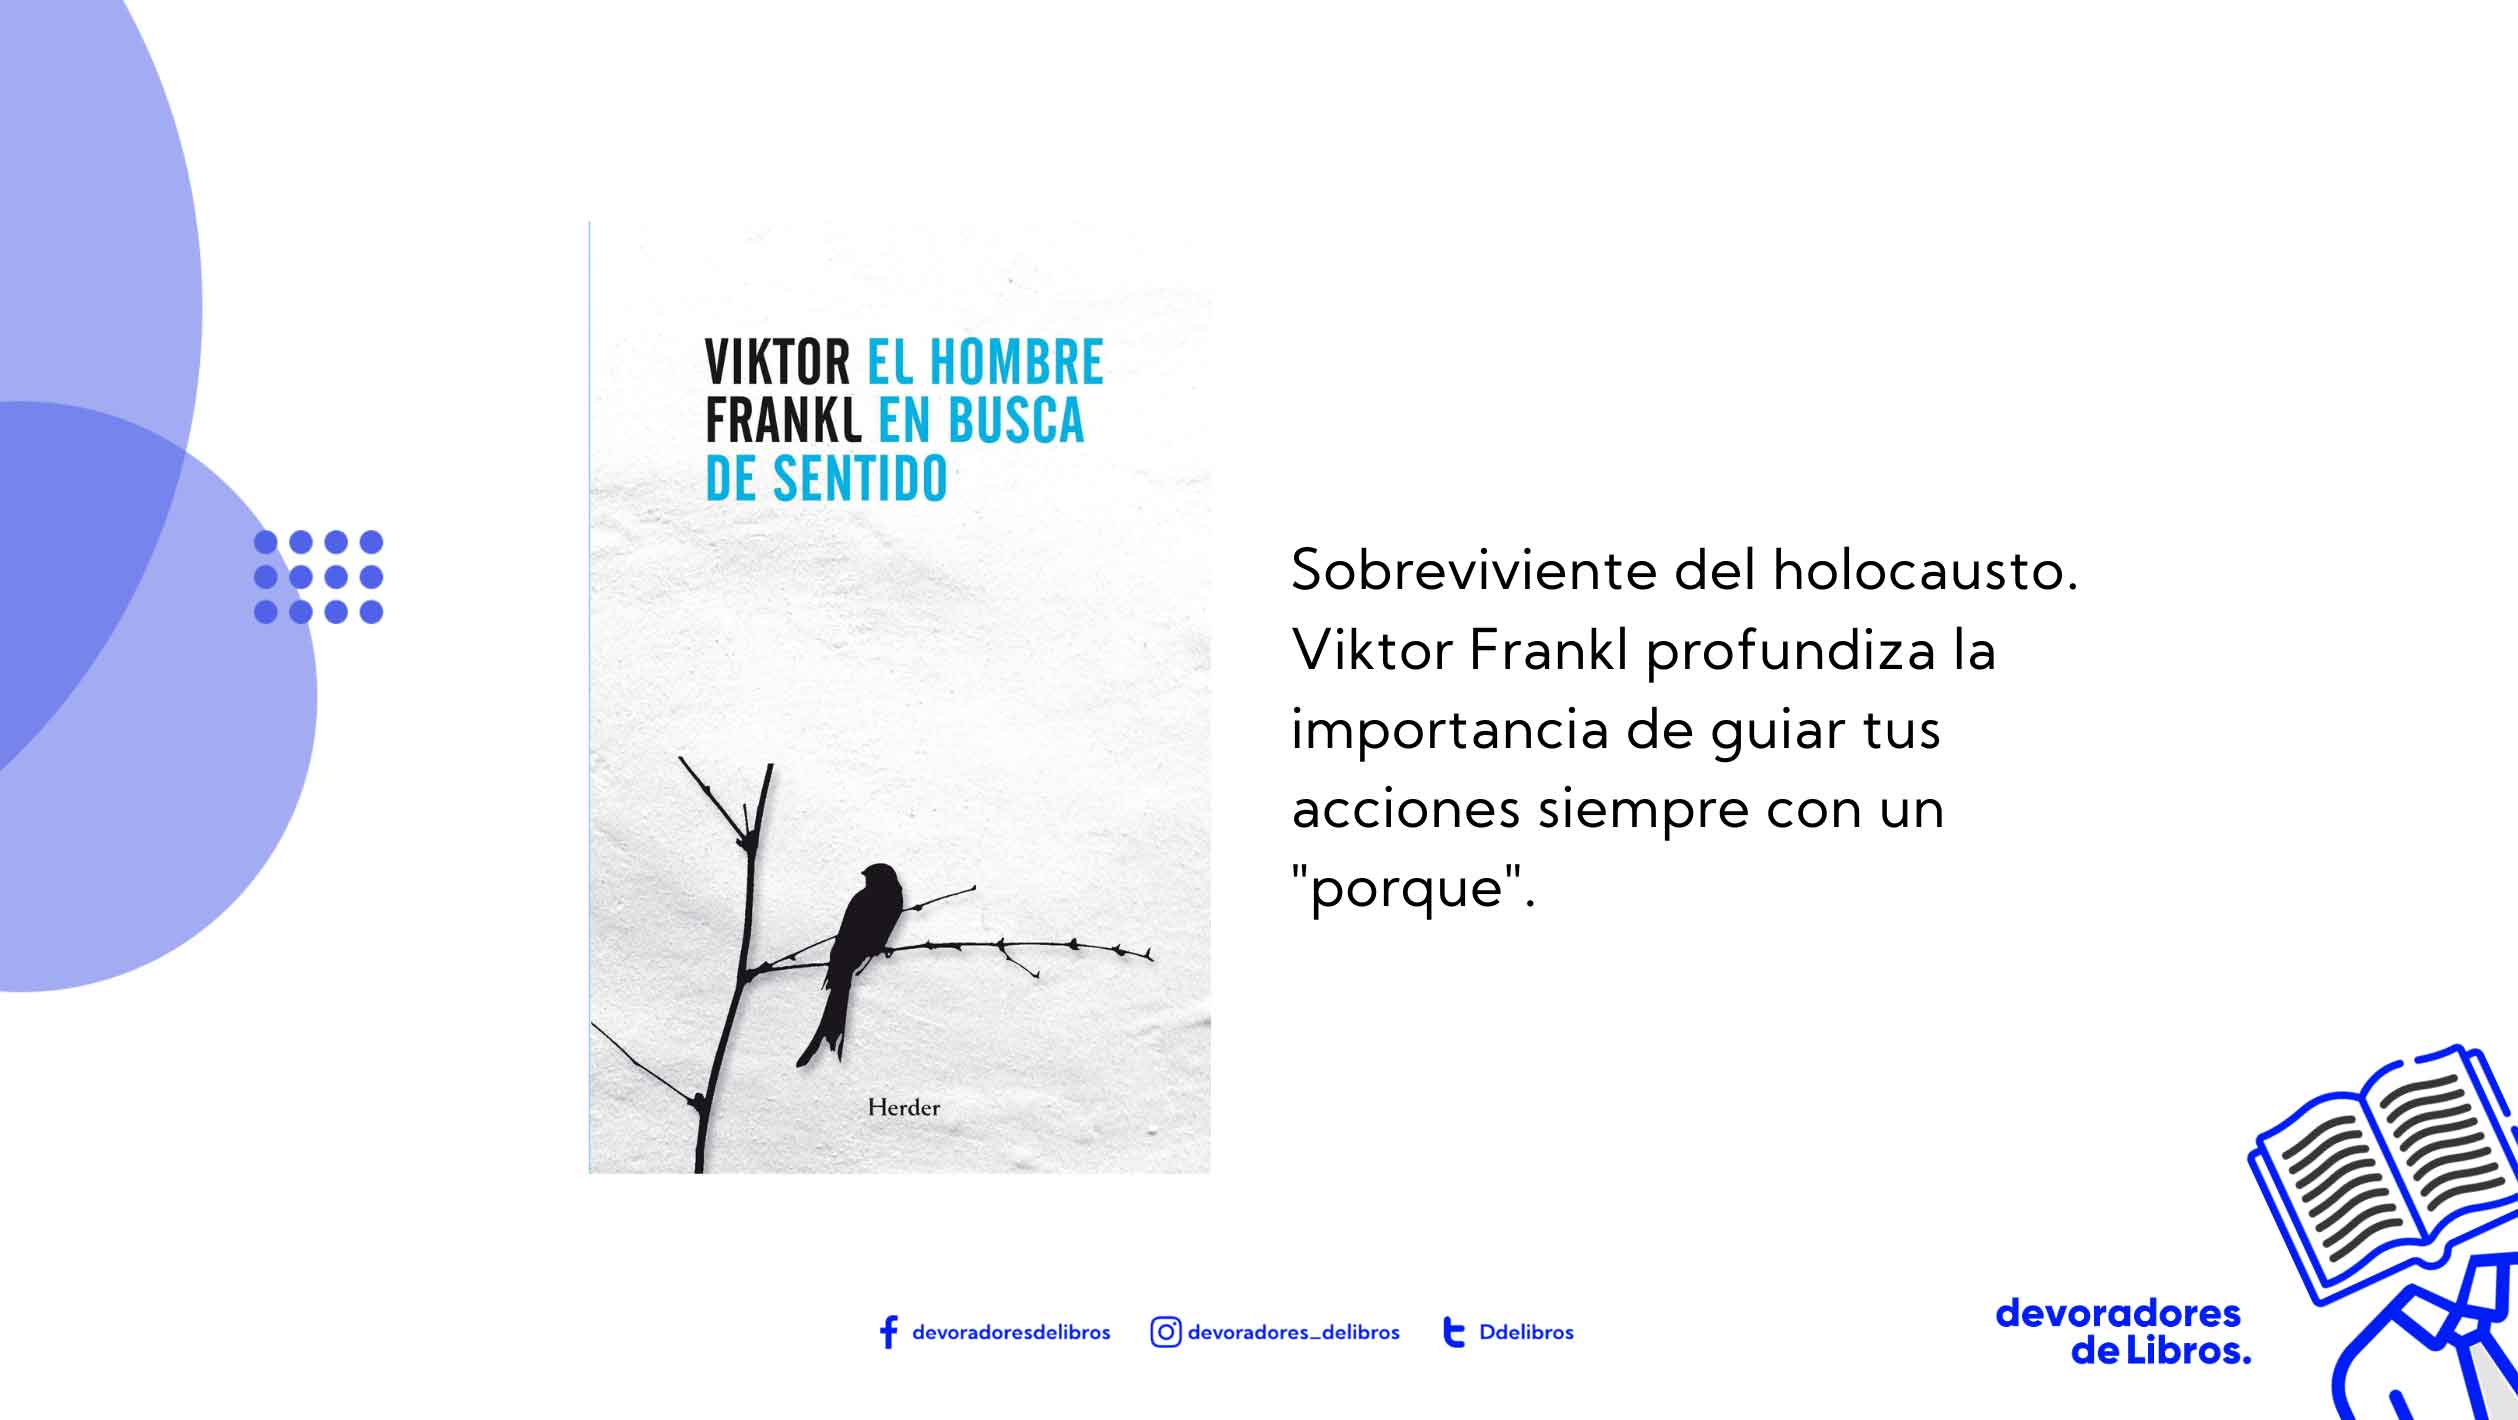 El hombre en busca de sentido es un libro escrito por el autor Viktor Frankl, resumen